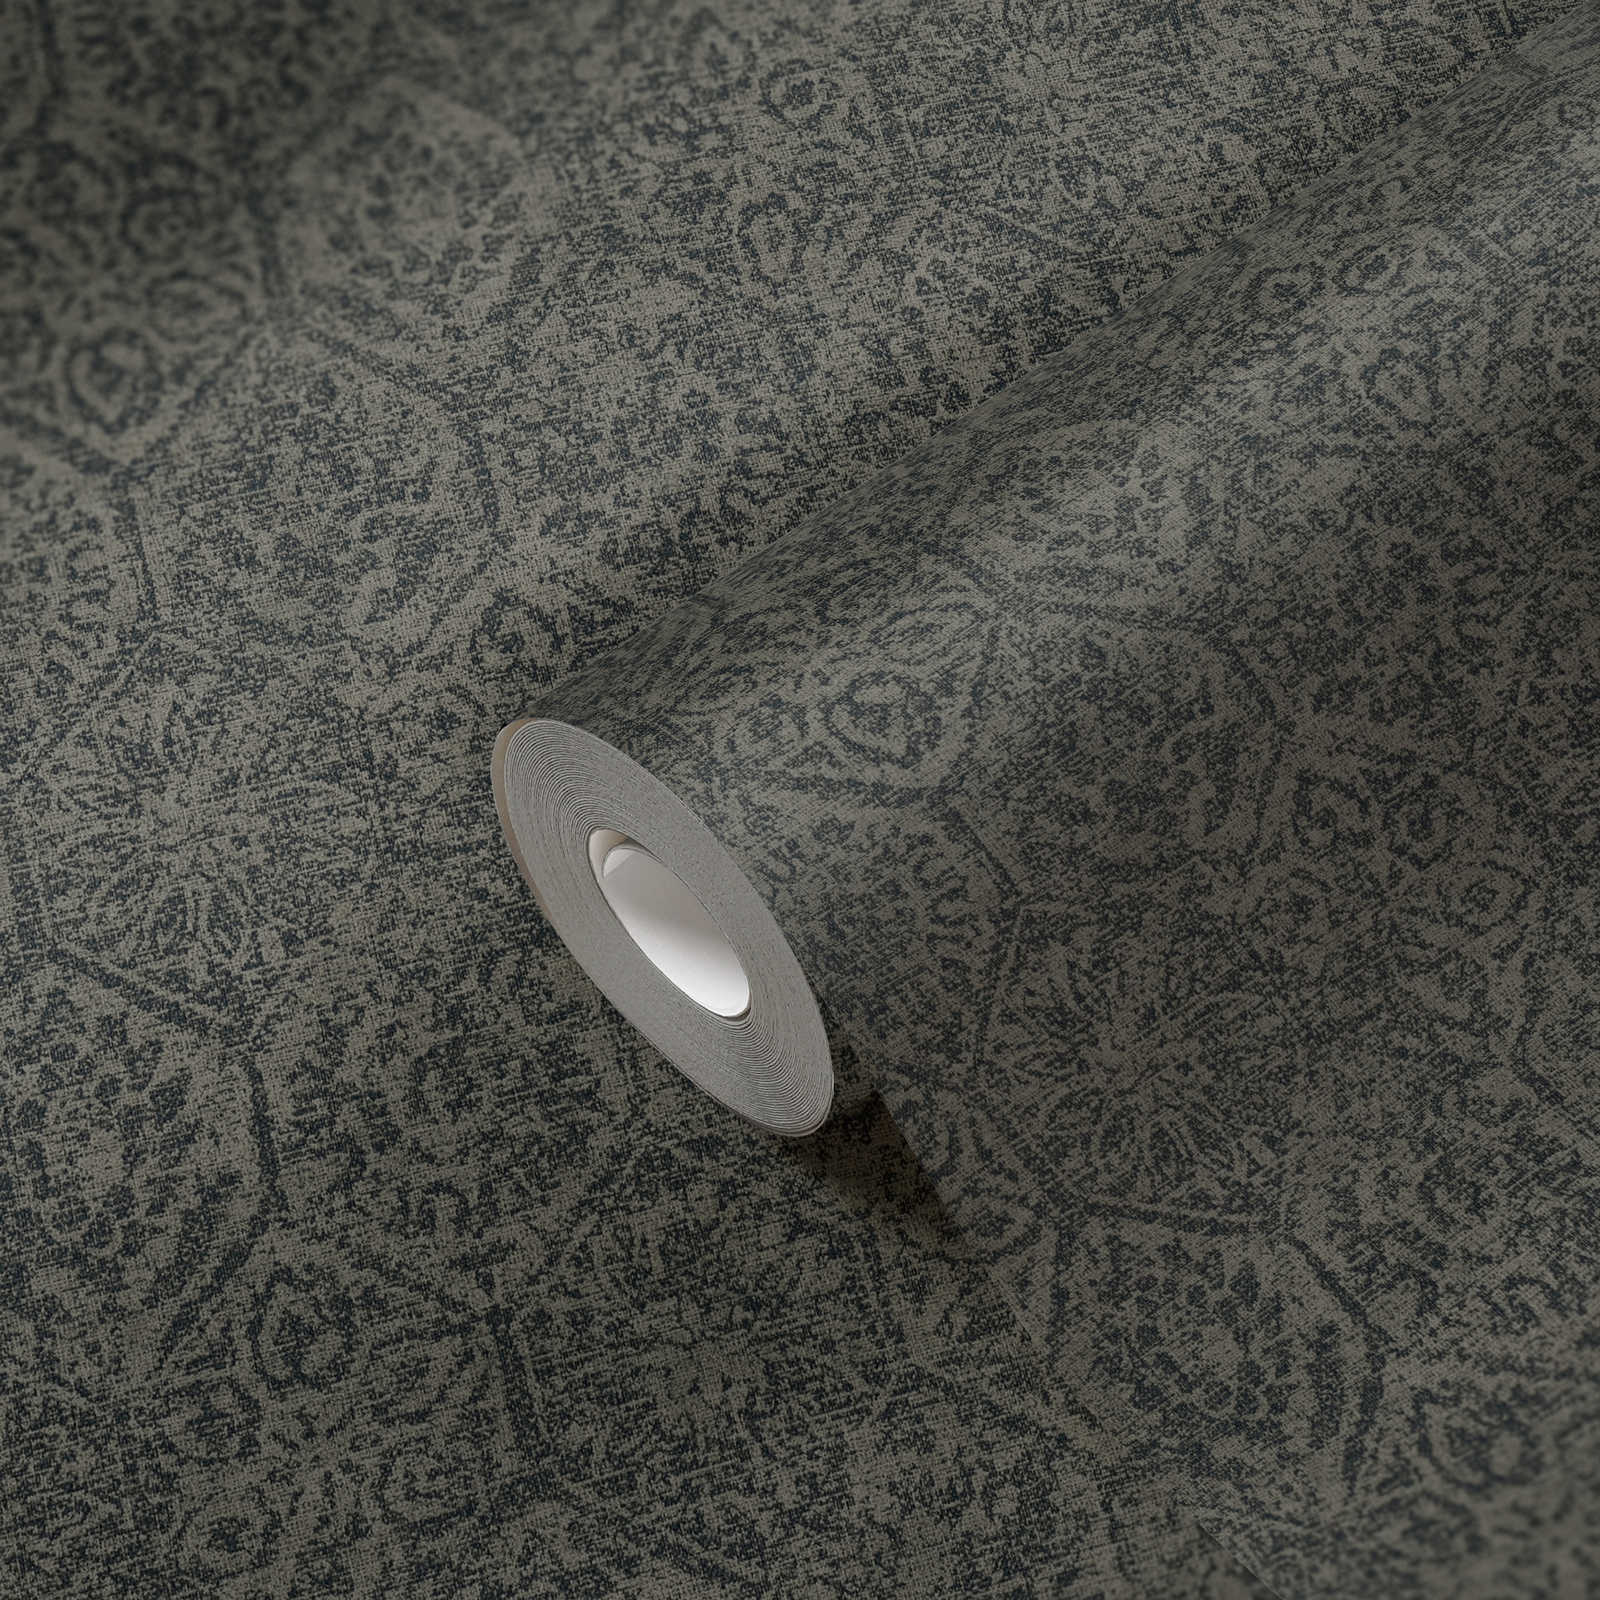             Wallpaper vintage pattern in floral used look - grey, black
        